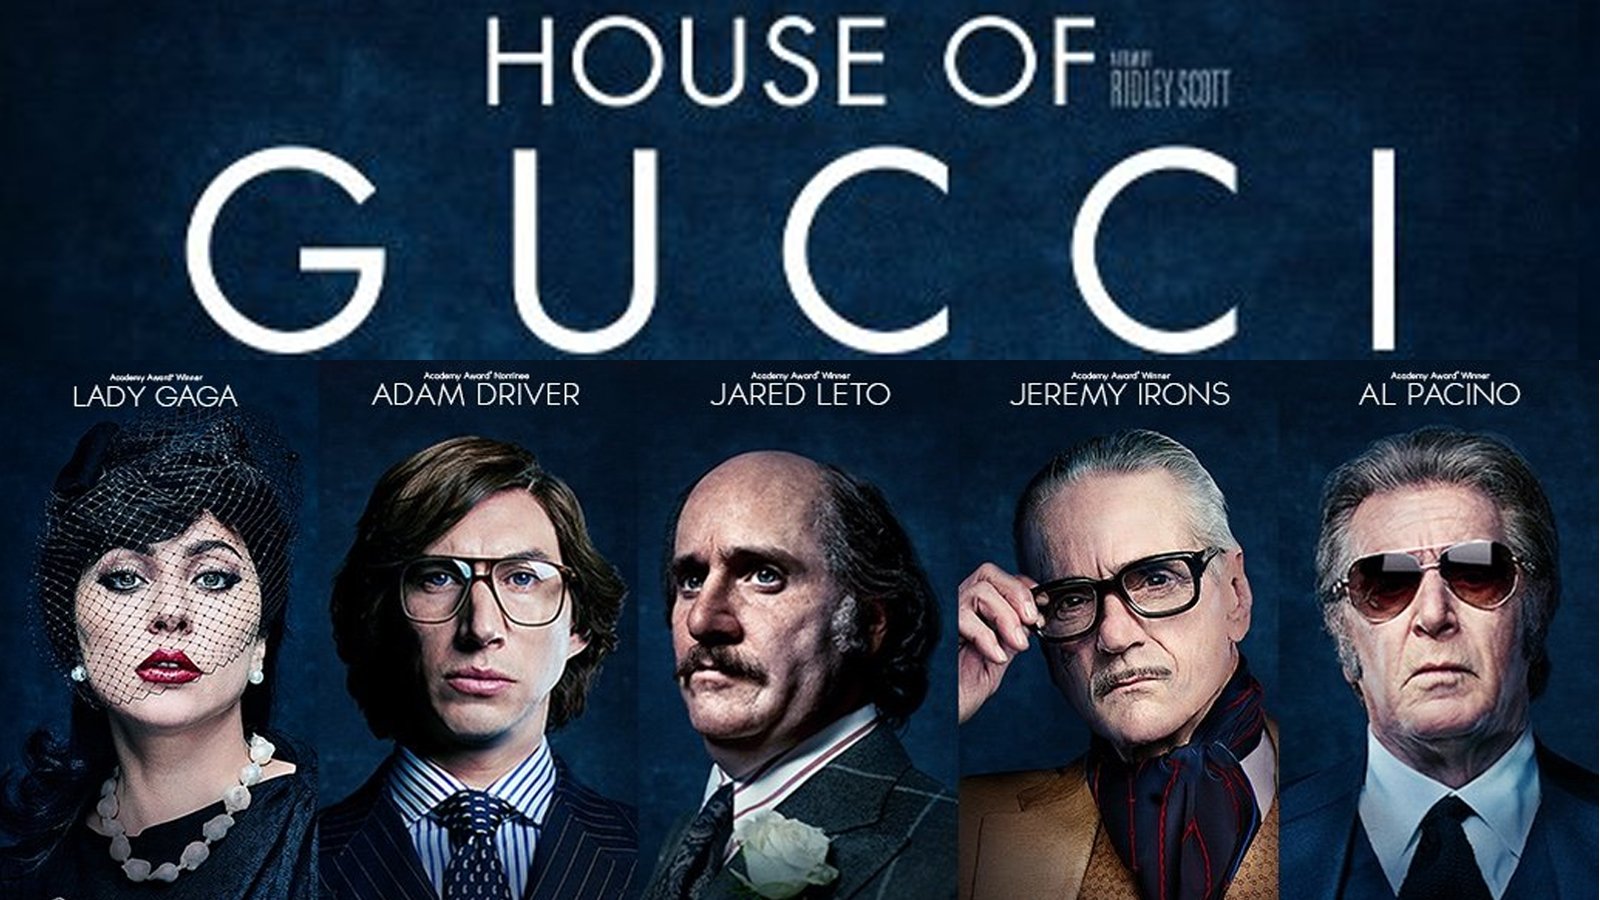 La casa Gucci, una historia de amor, traición y muerte